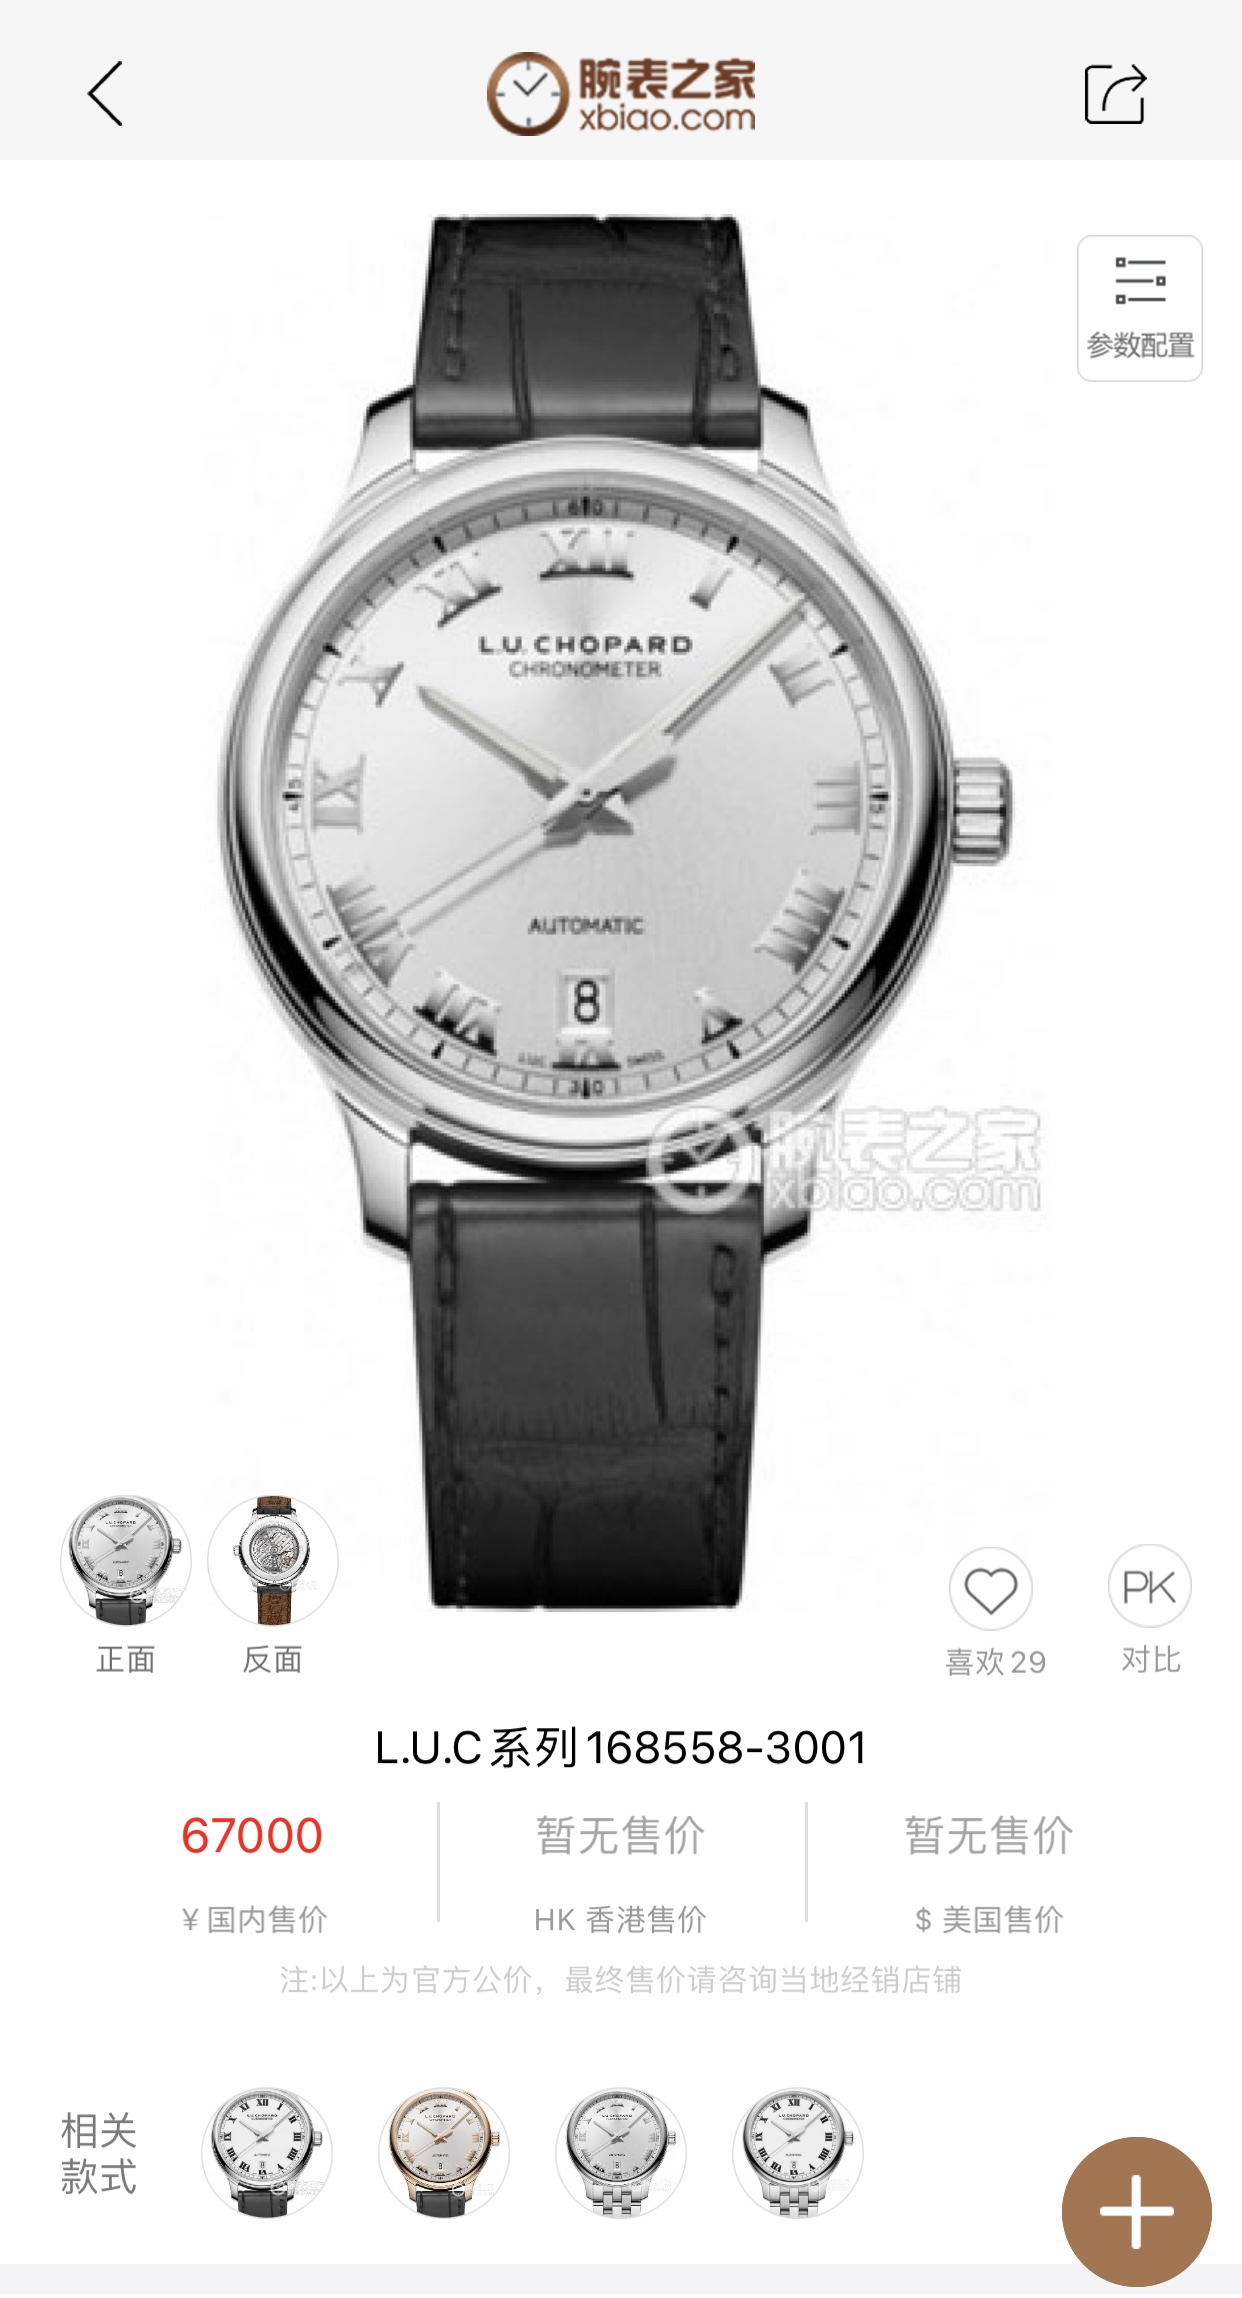 FK萧邦l.u.c-168544-3002。男士皮带机械手表尺寸；完美细节，42x11.39（毫米）。